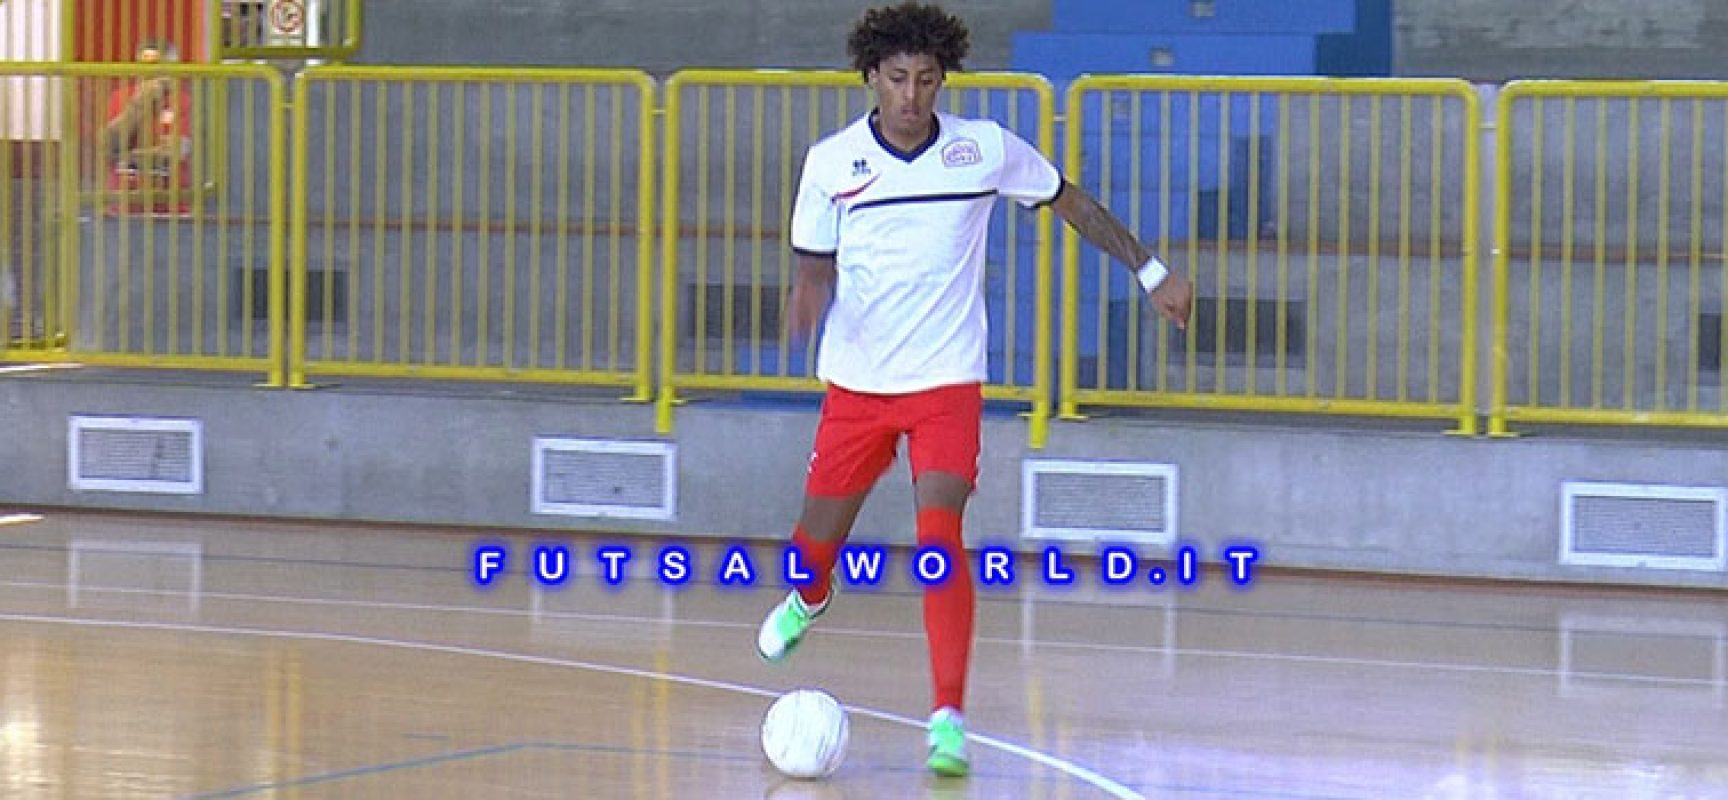 Futsal Bisceglie, ufficiale l’ingaggio del portoghese Nuno Almeida